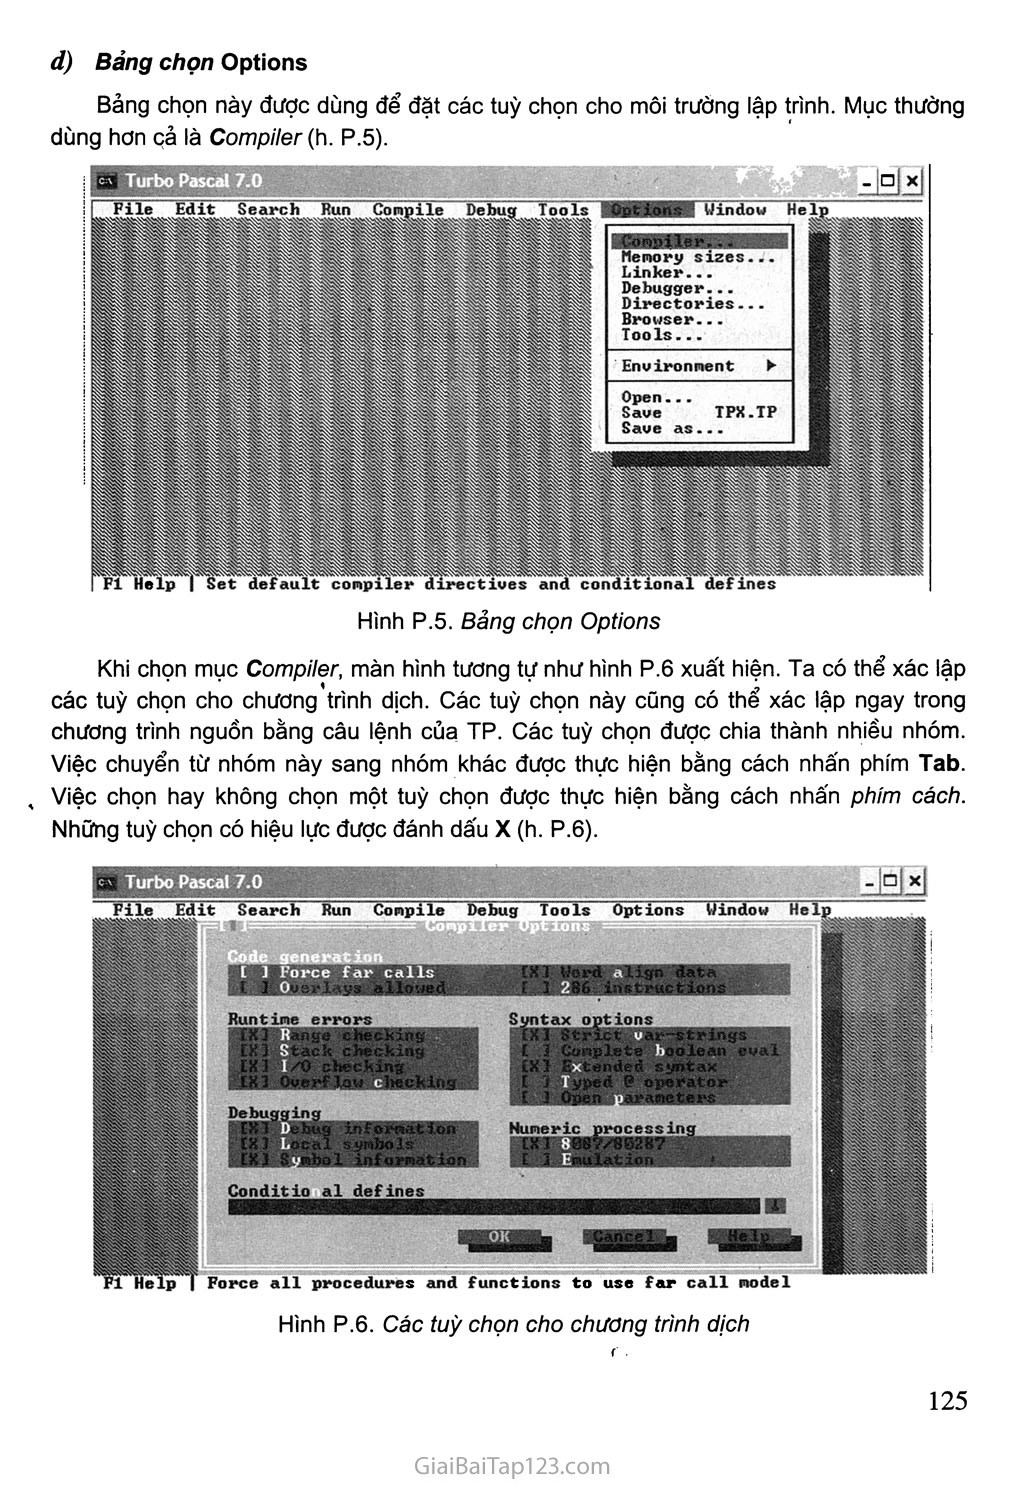 1. Môi trường Turbo Pascal trang 4